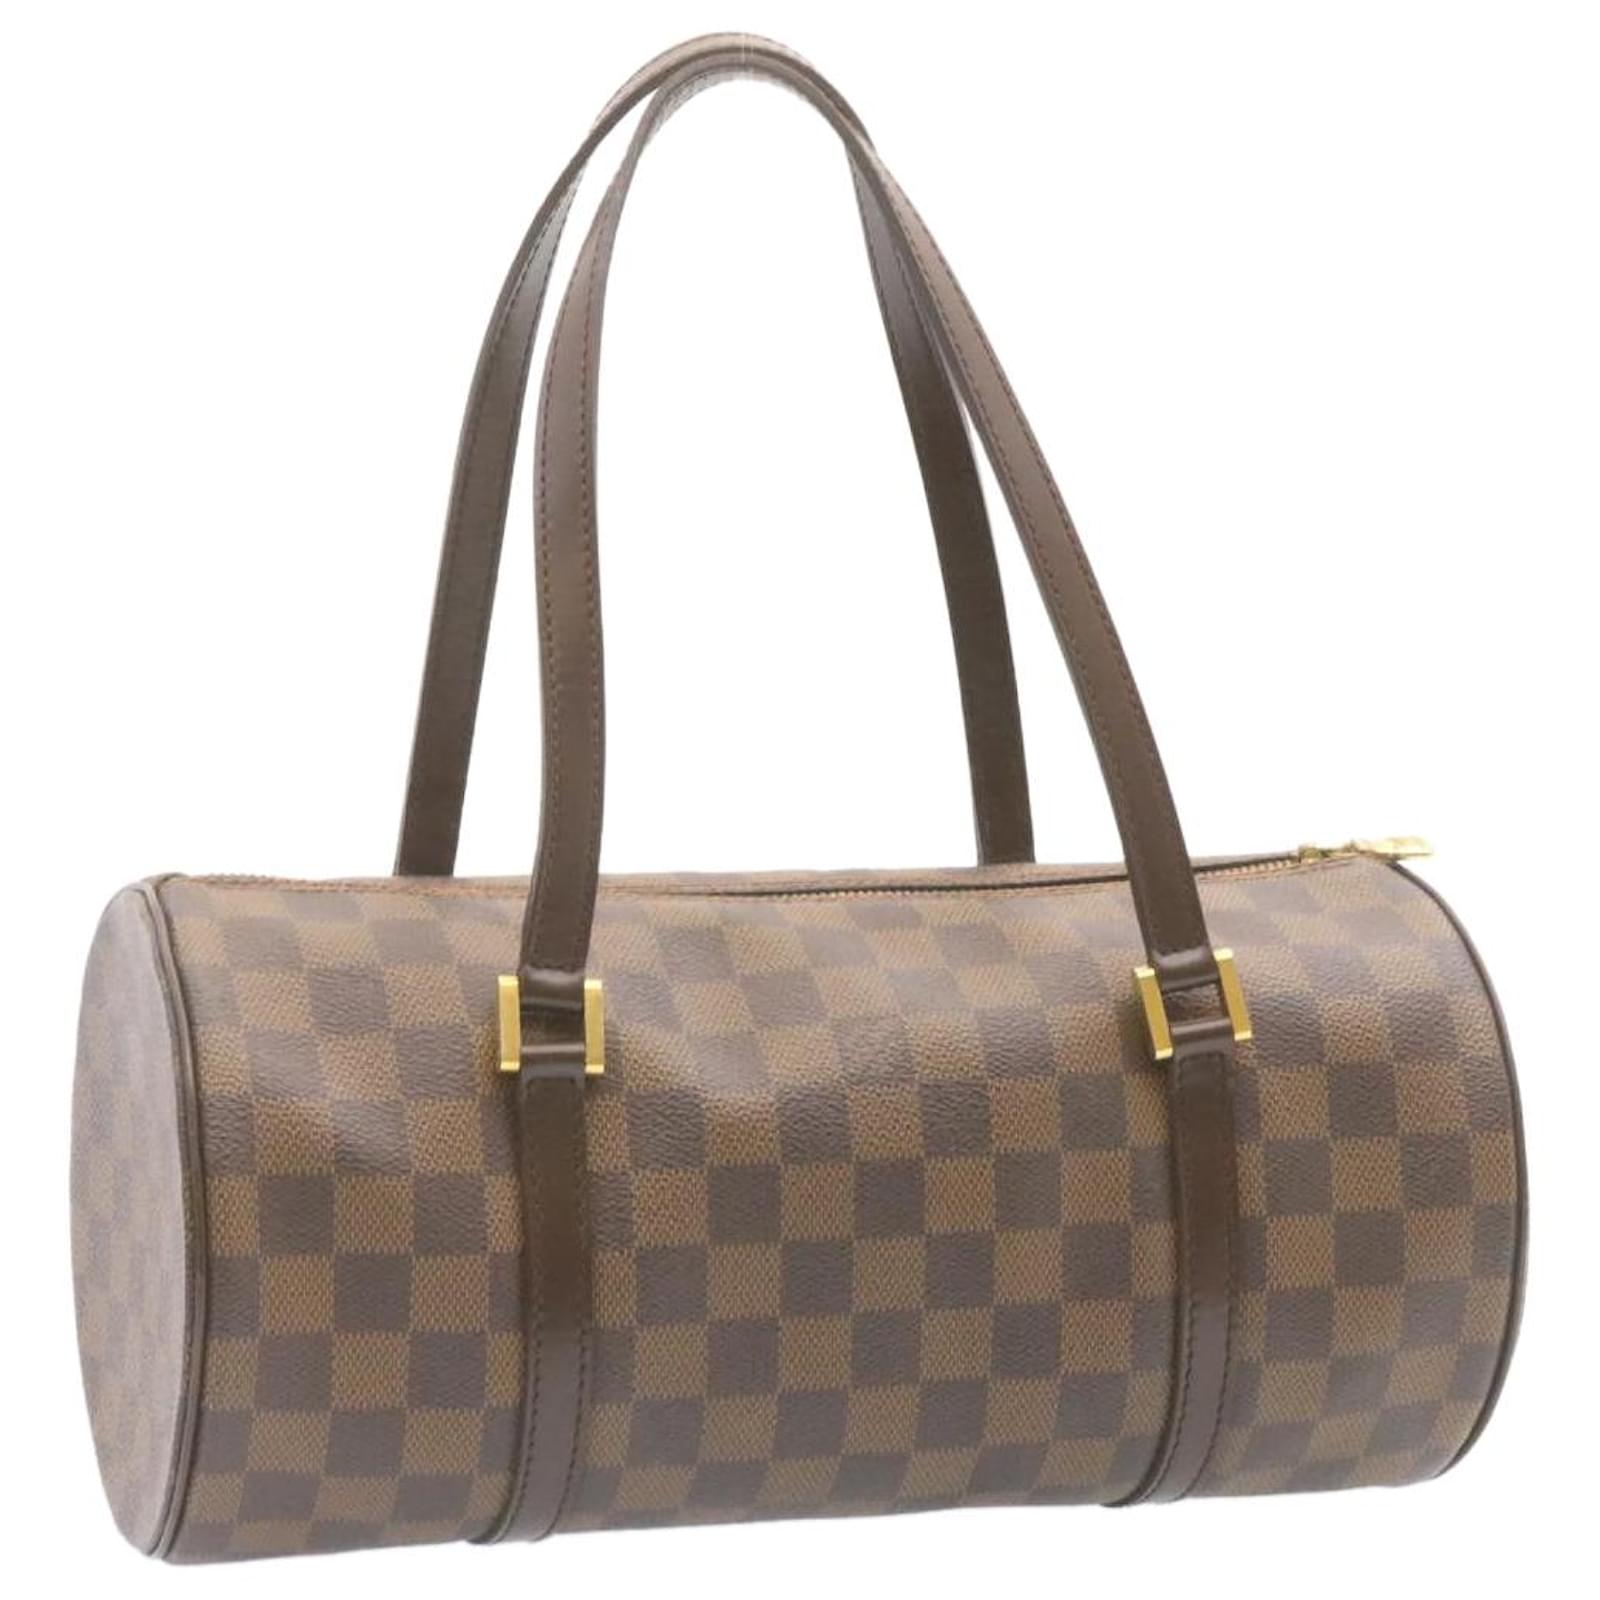 Authentic Louis Vuitton Damier Papillon 30 Hand Bag Purse N51303